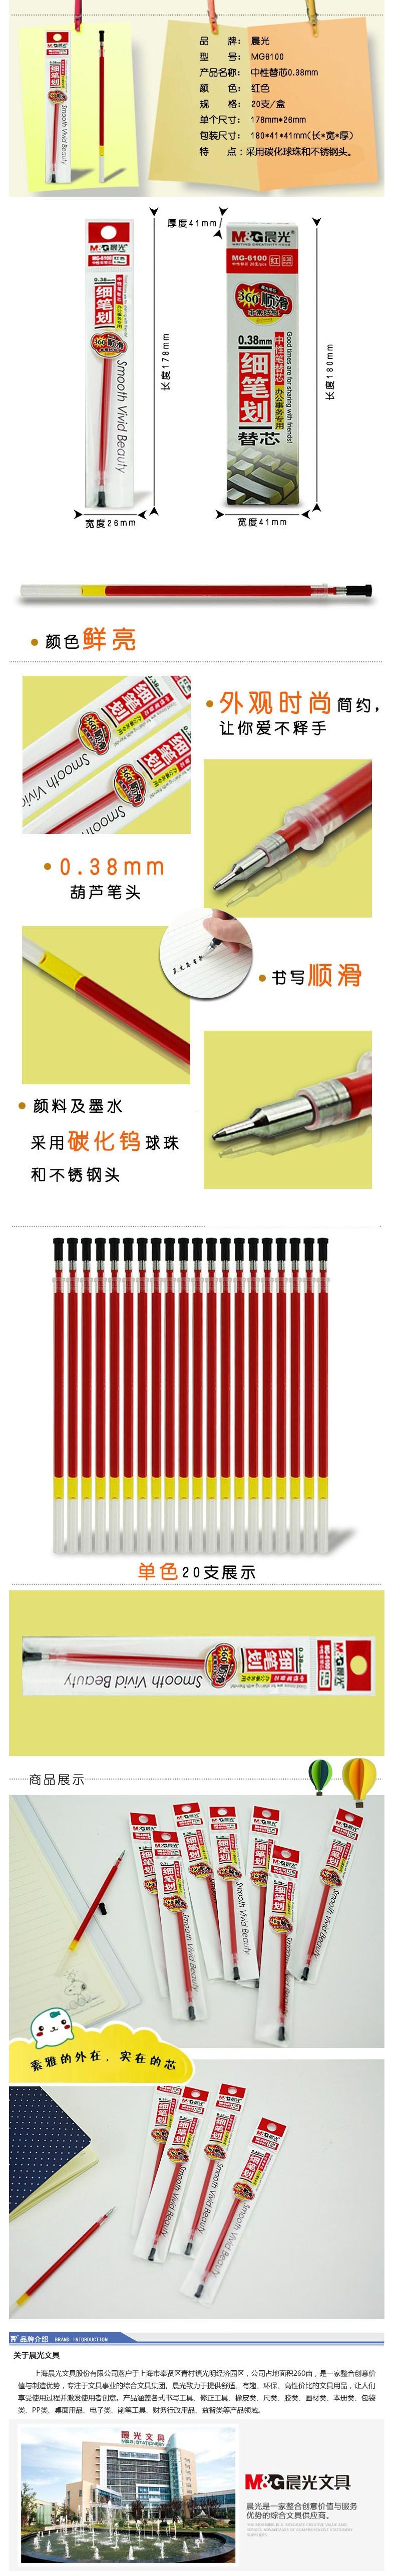 【晨笔MG-6100红色笔芯】晨光（M&G）MG-6100 极细中性笔替芯 0.38mm 红色 20.jpg